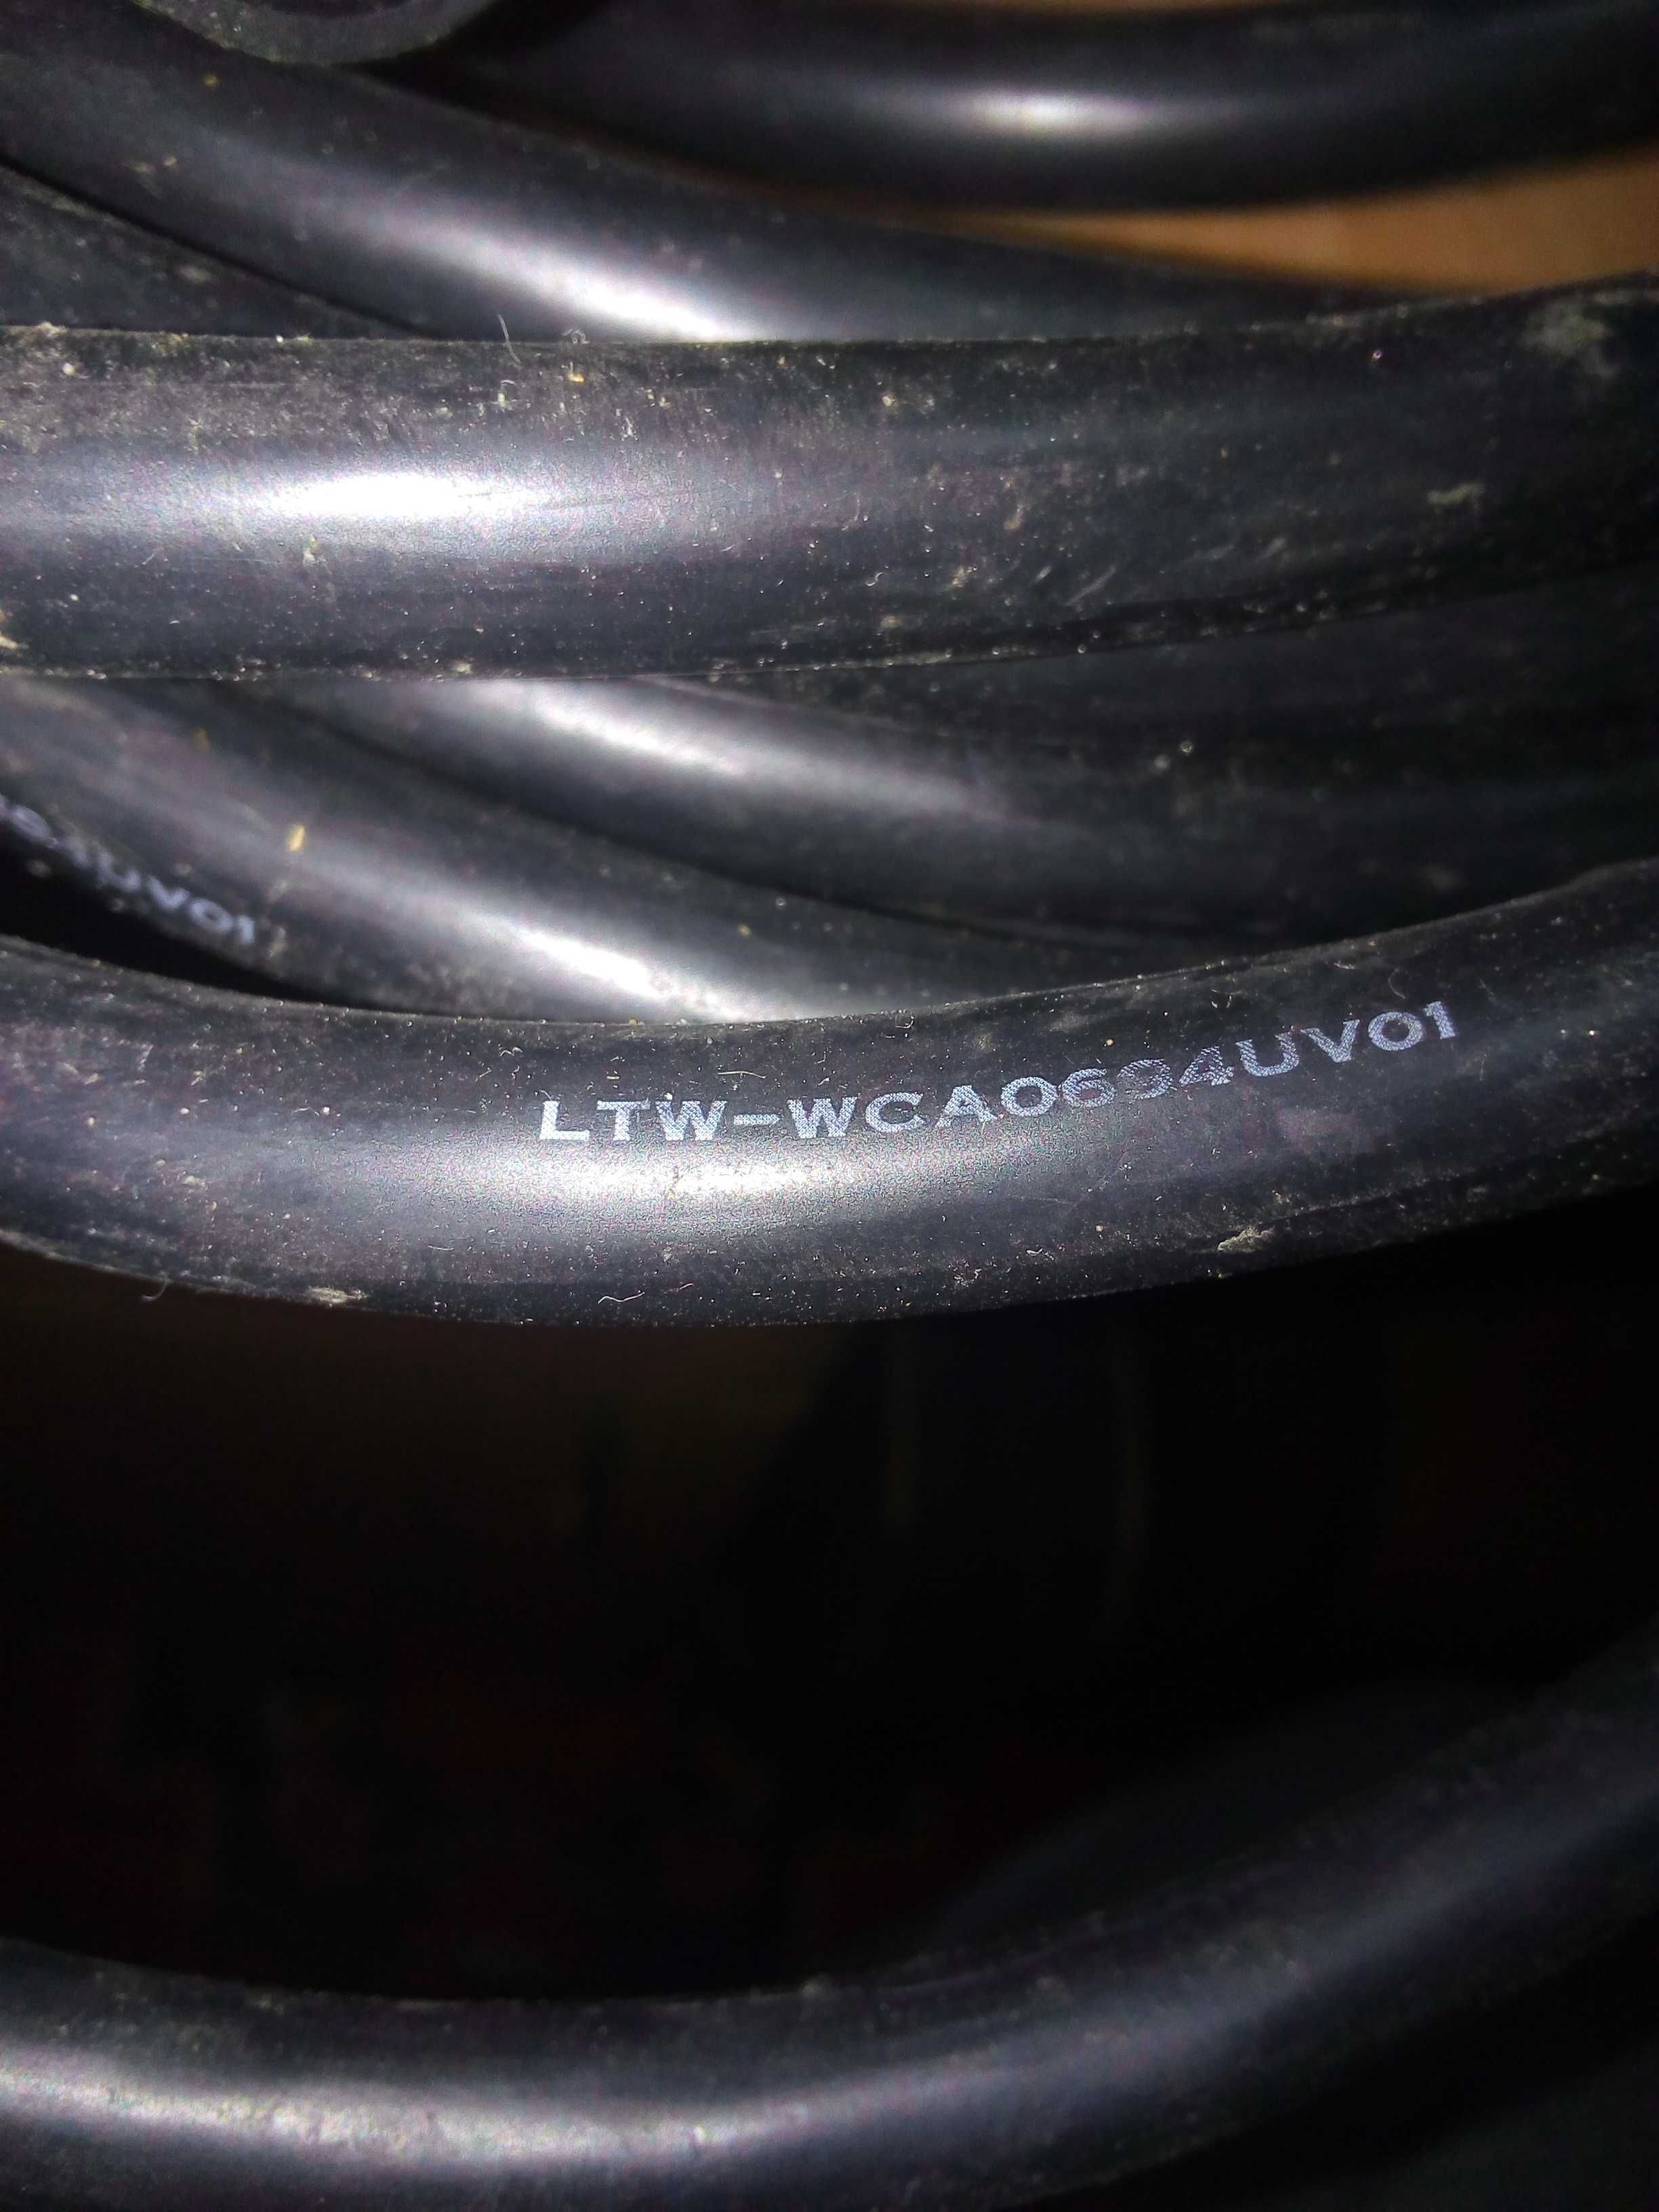 Сетевой кабель LTW - WCA0694UV01